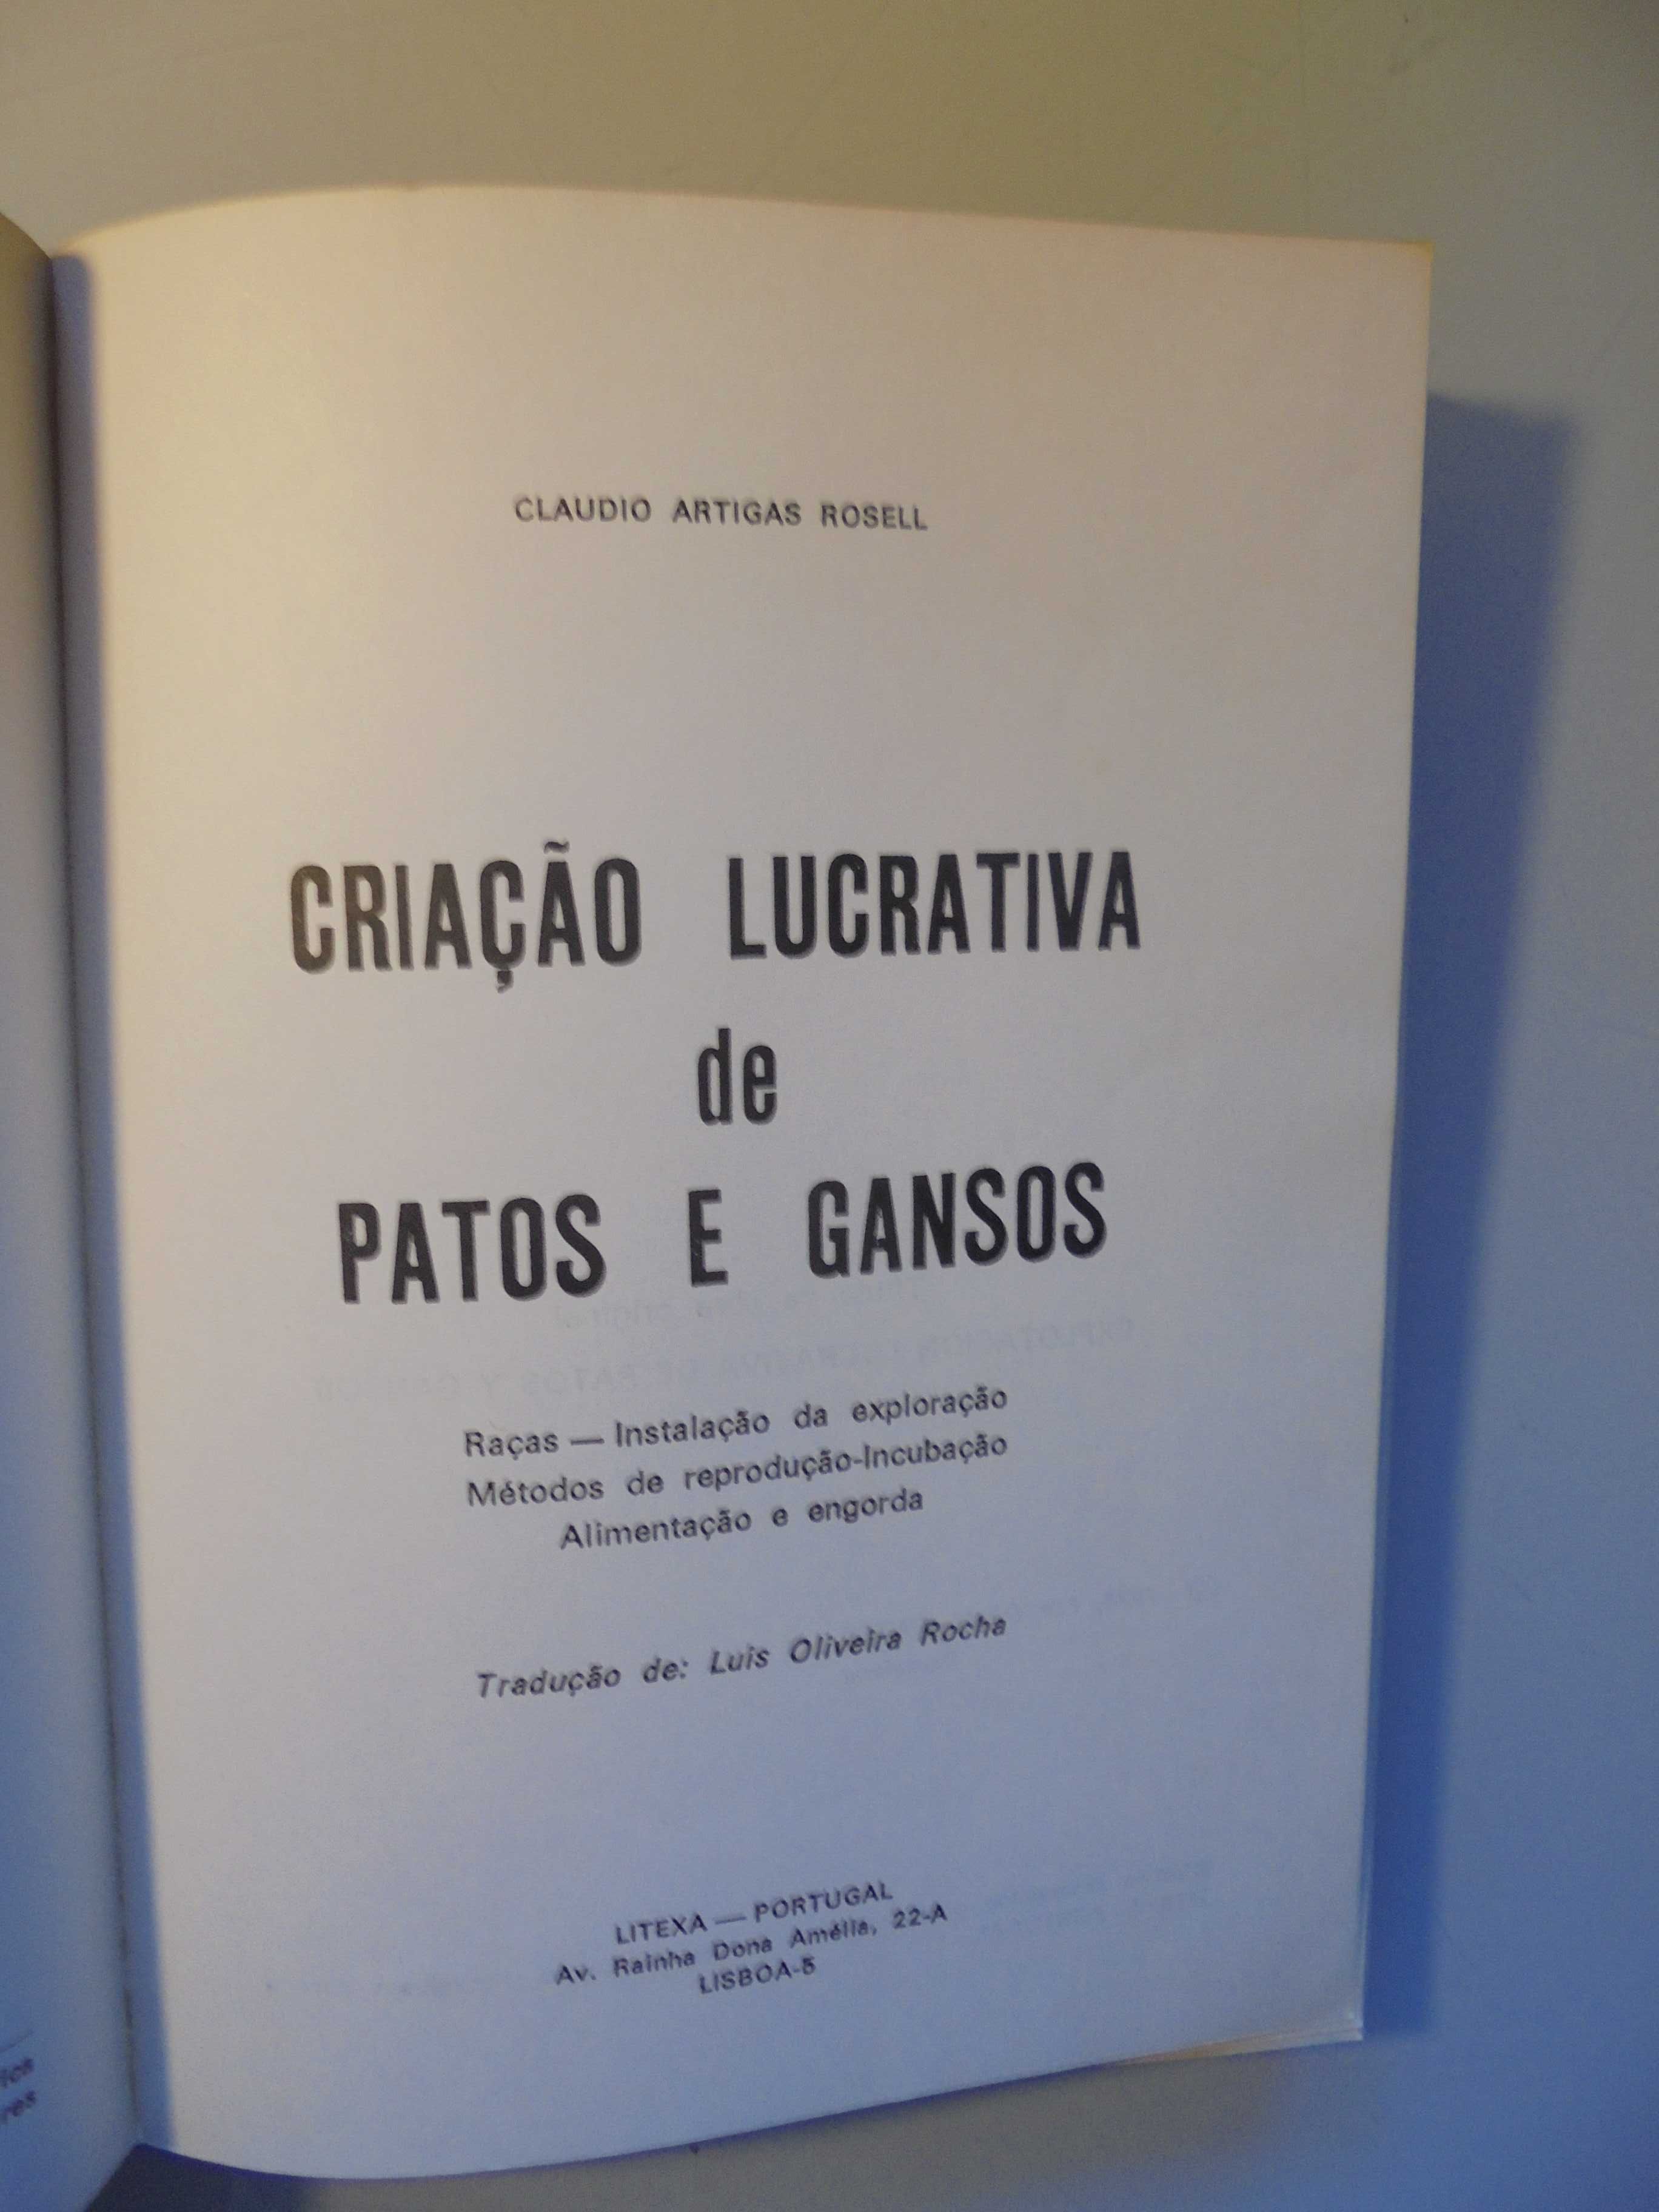 Rosel (Claudio Artigas);Patos e Gansos